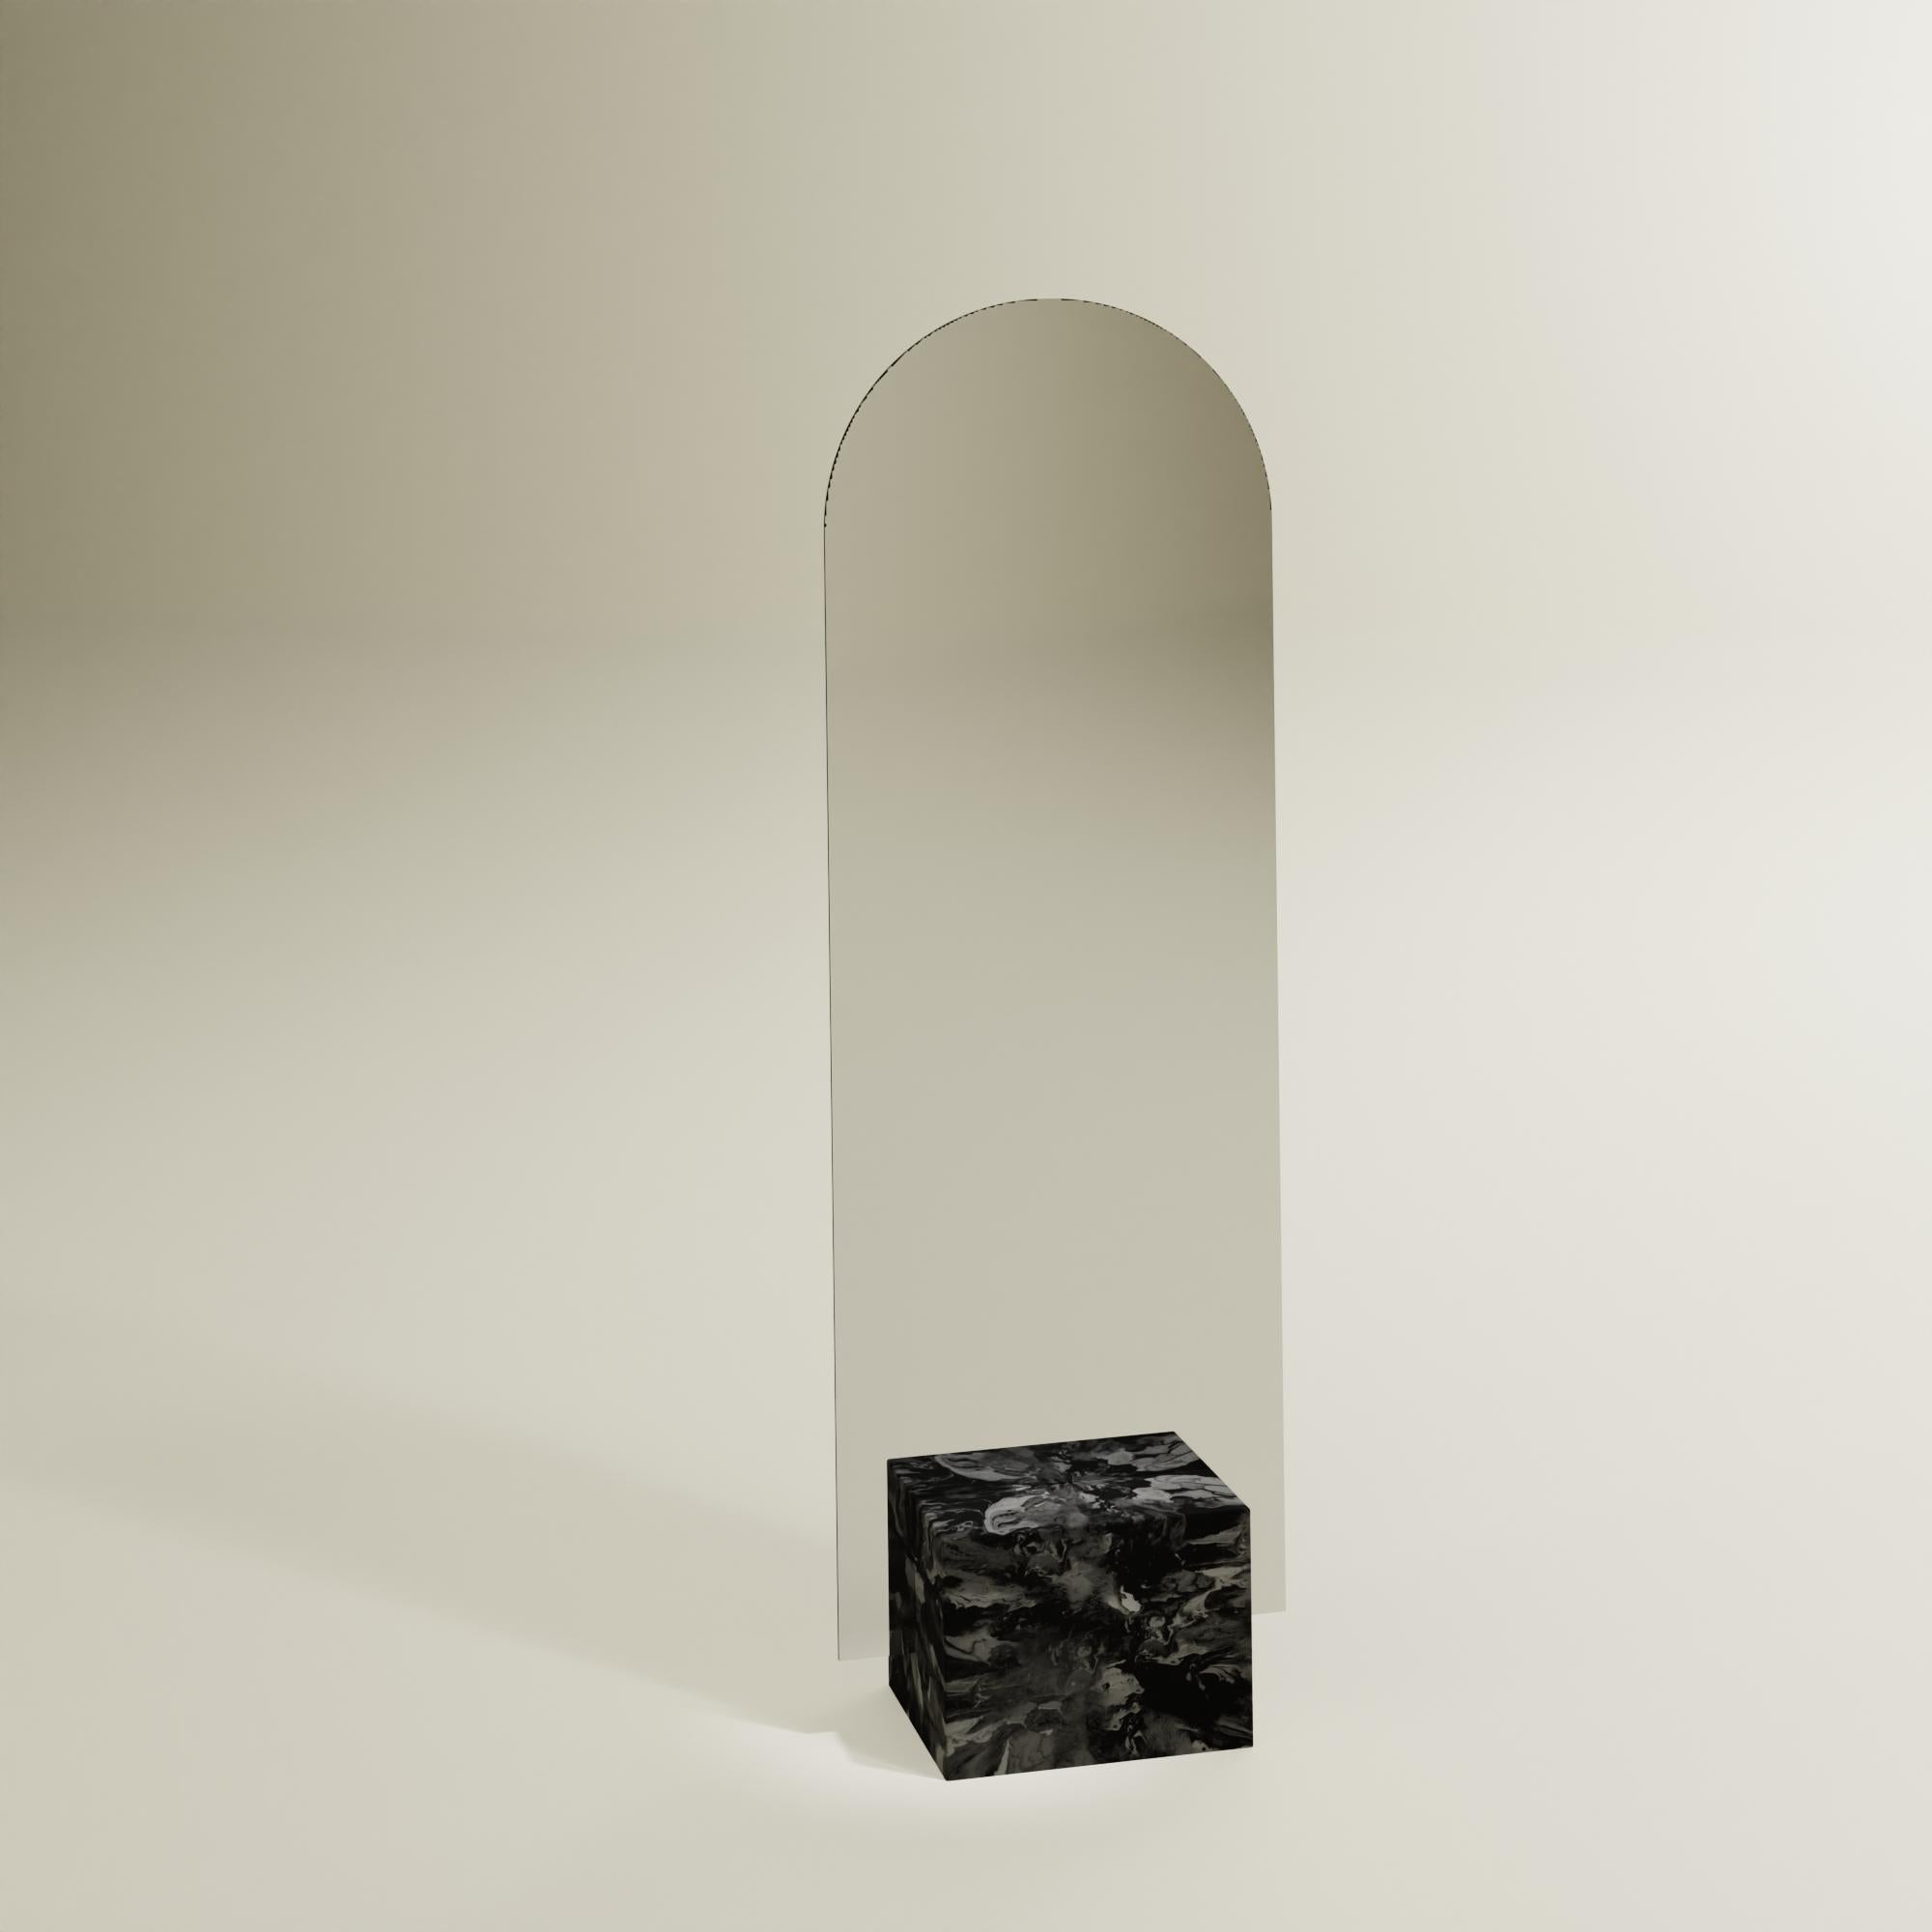 Miroir noir contemporain sur pied fabriqué à la main à partir de plastique 100% recyclé par Anqa Studios
Avec son fond en forme de pierre et la silhouette fragile de sa partie supérieure, le miroir ANQA Moonrise est une confluence moderne d'art et